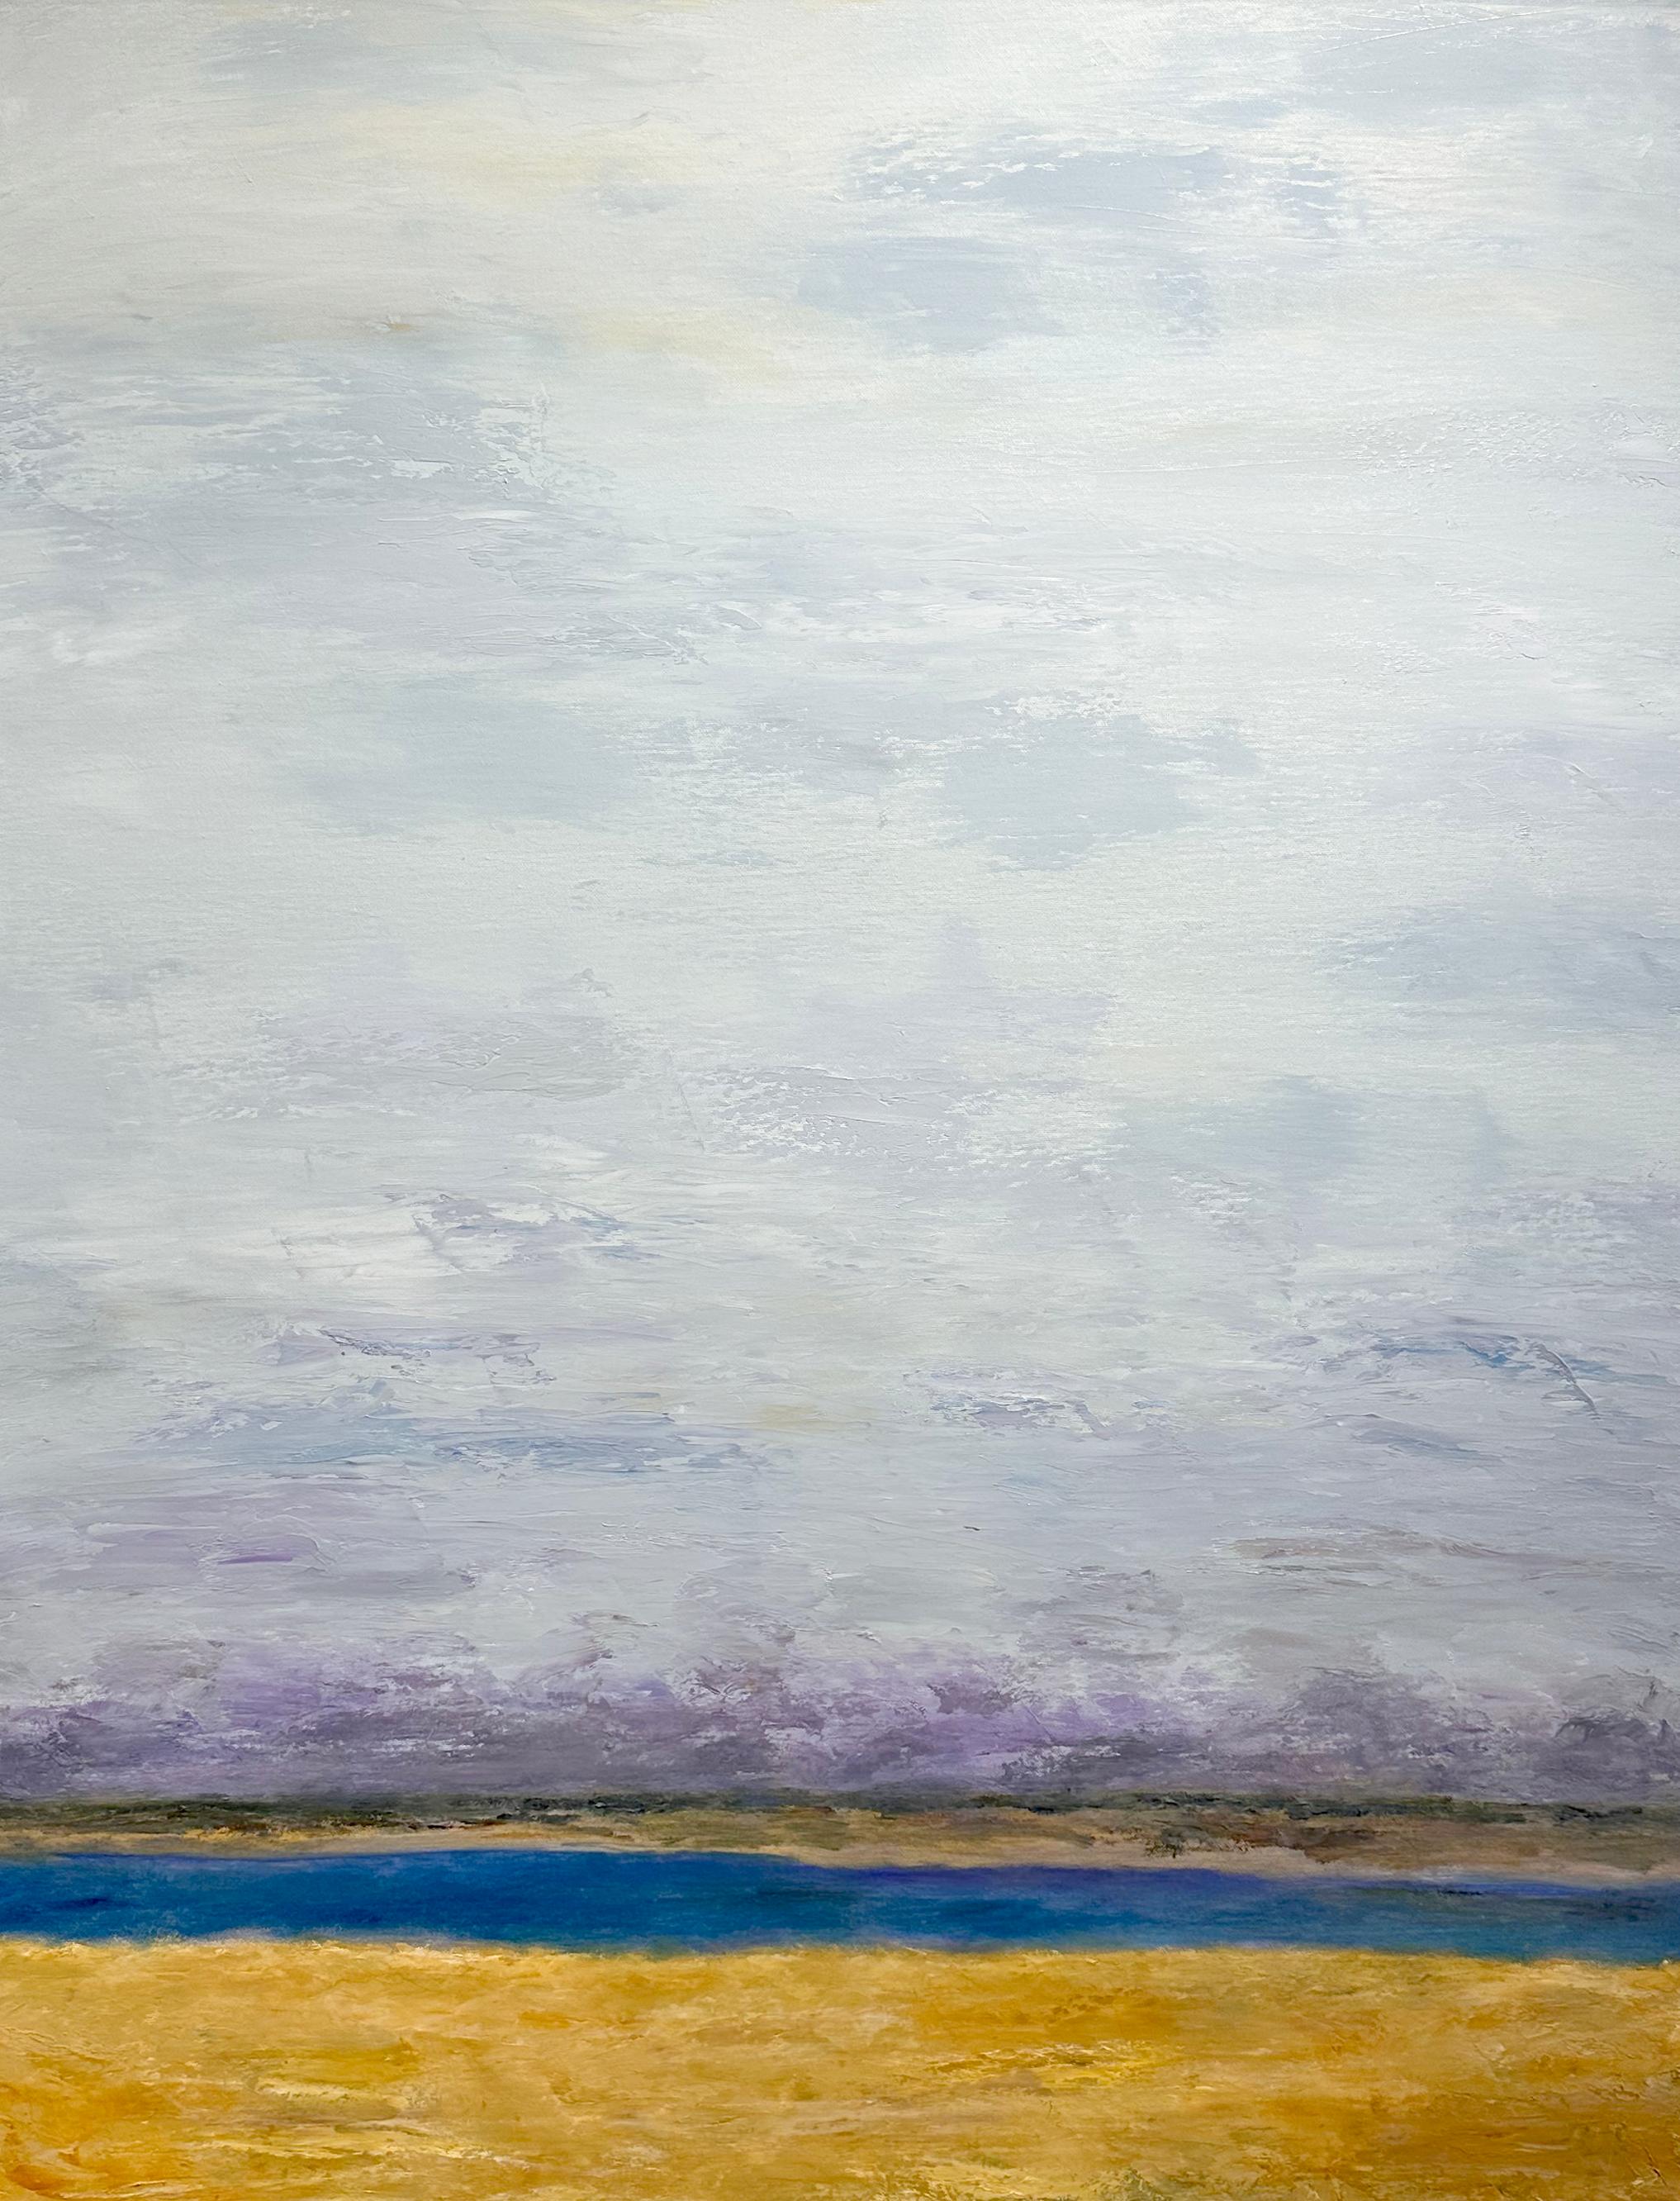 Das Werk "Endless Skies" ist ein 40x30 großes Ölgemälde auf Leinwand des Künstlers Gary Zack, das eine stimmungsvolle abstrakte Landschaft zeigt.  Wolken füllen einen dunstigen violetten und blauen Himmel, der sich über einem warmen, sumpfigen Land